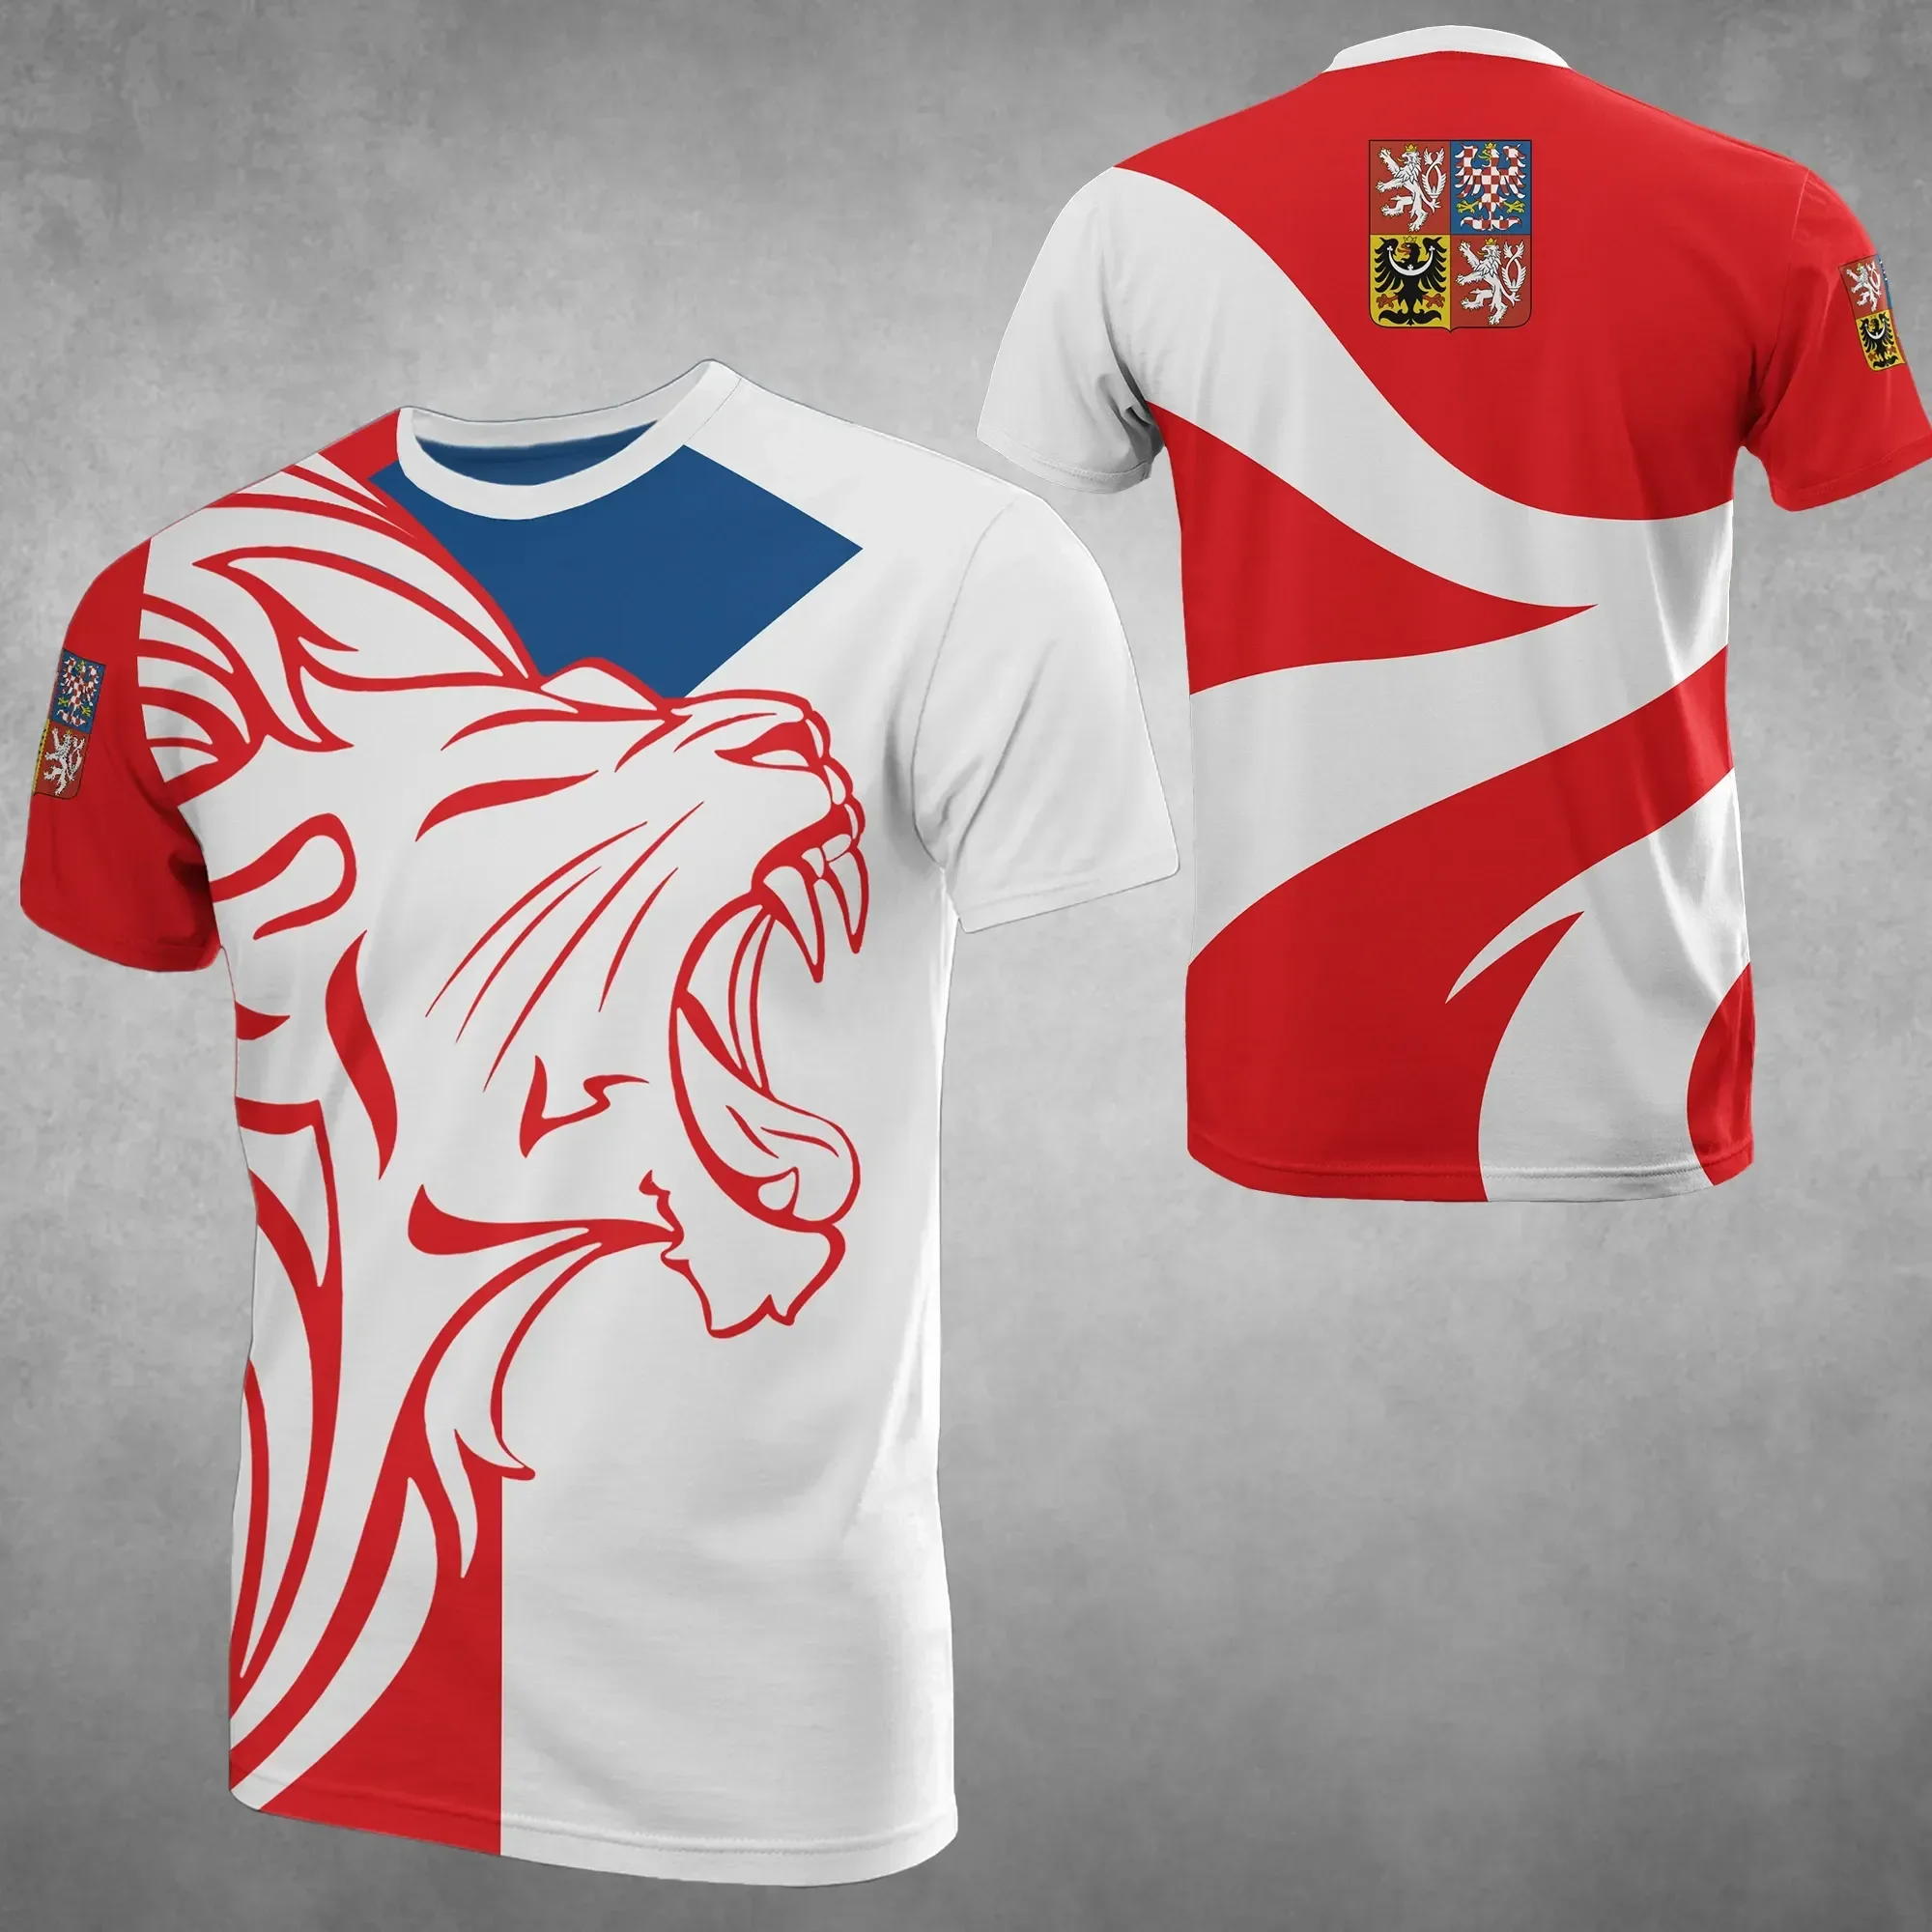 

Футболка с 3d флагом Чехии, футболка с гербом Чехии, футболка с индивидуальным флагом, Повседневная футболка большого размера с коротким рукавом